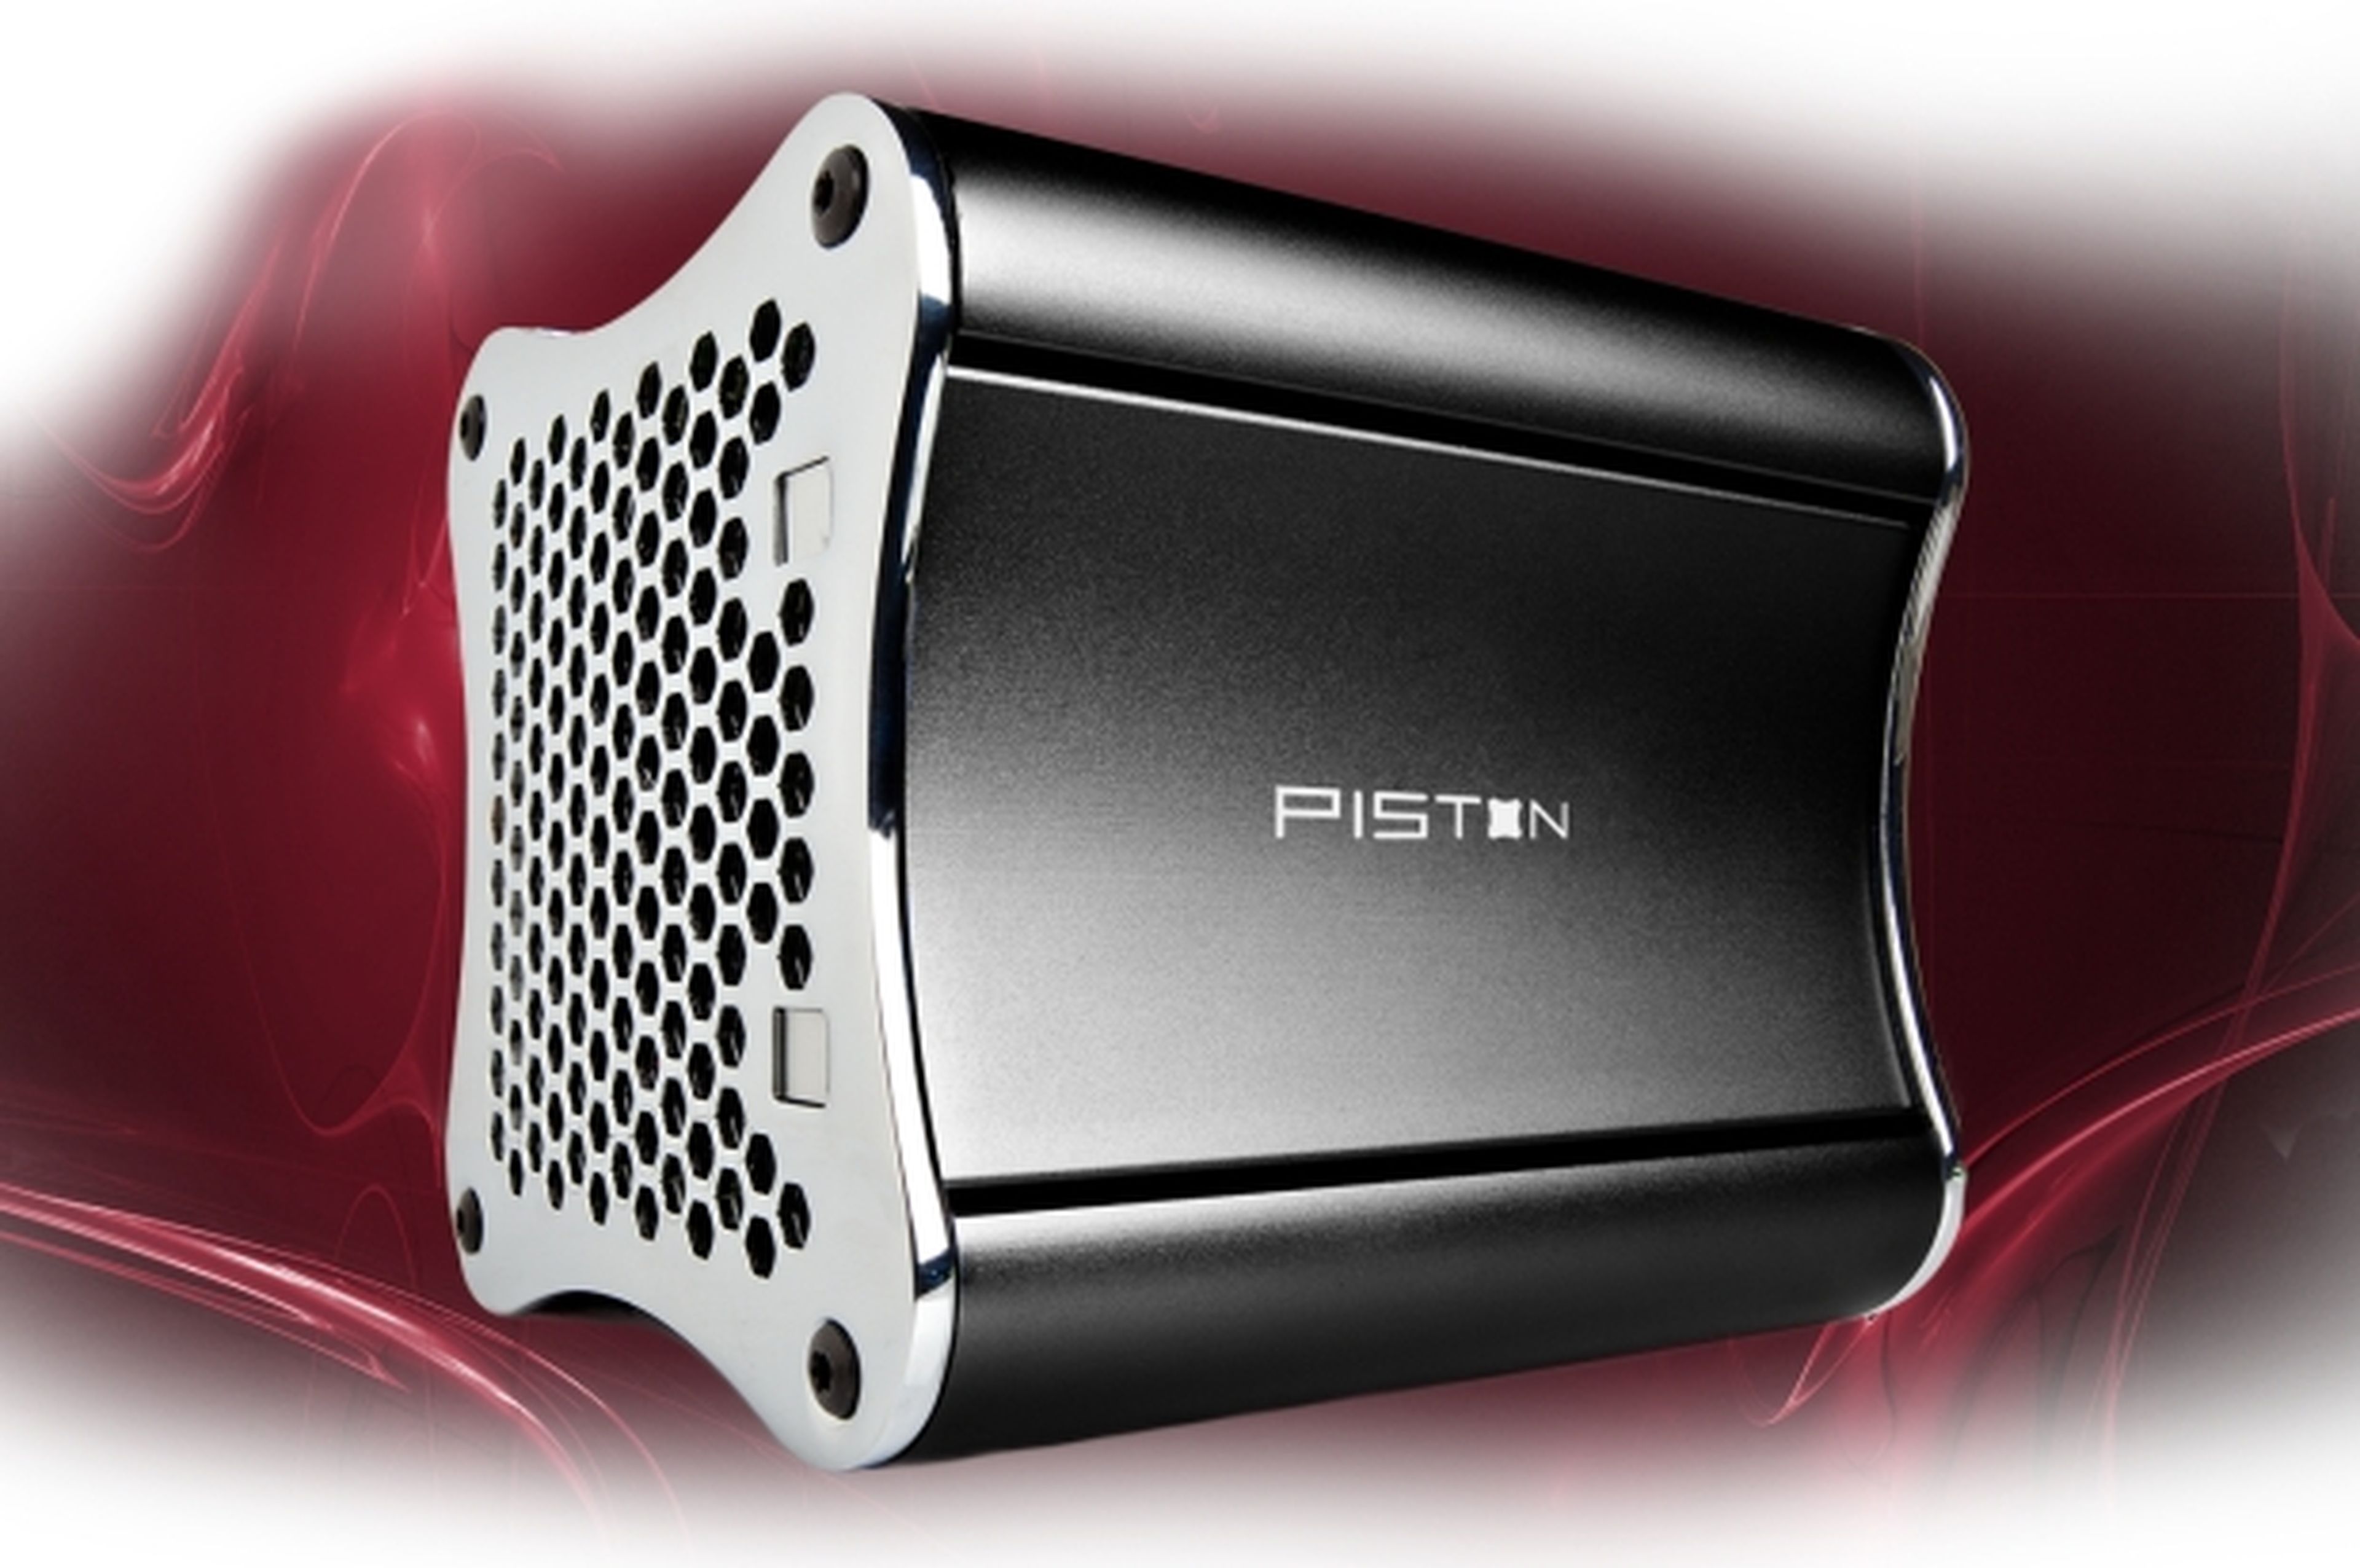 Se presenta Xi3 Piston, la primera Steam Machine